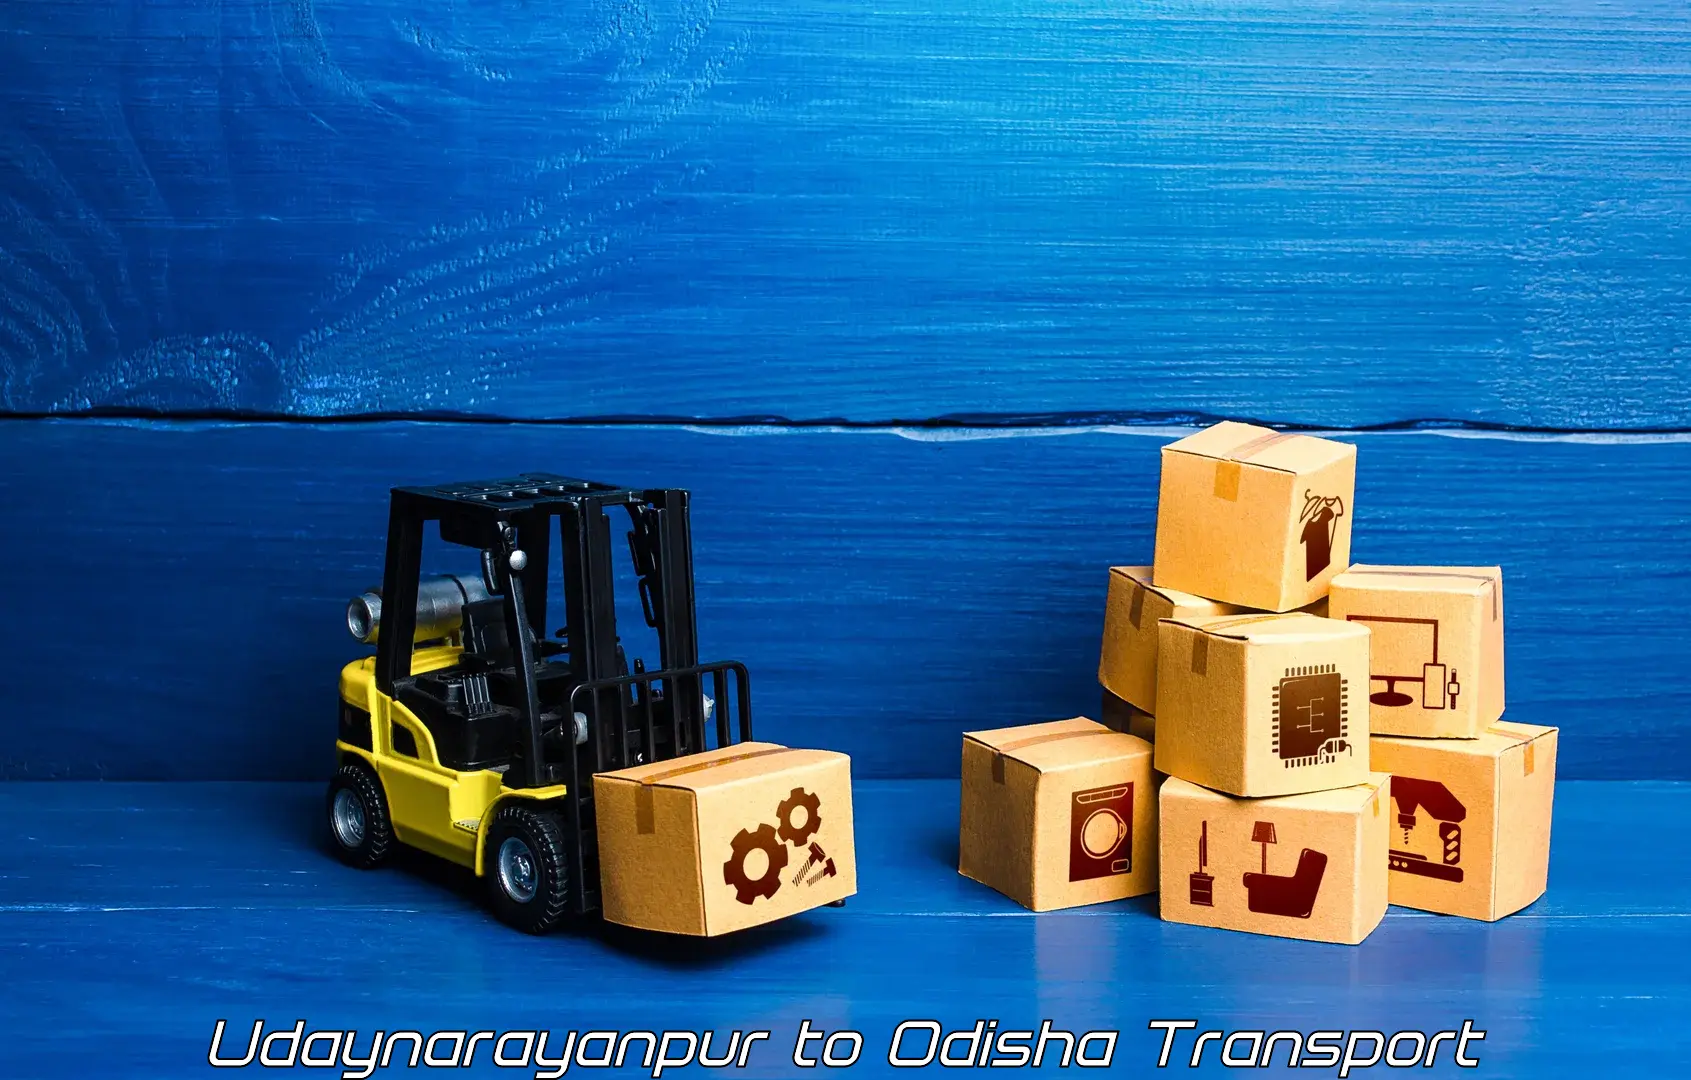 Furniture transport service Udaynarayanpur to Tikiri